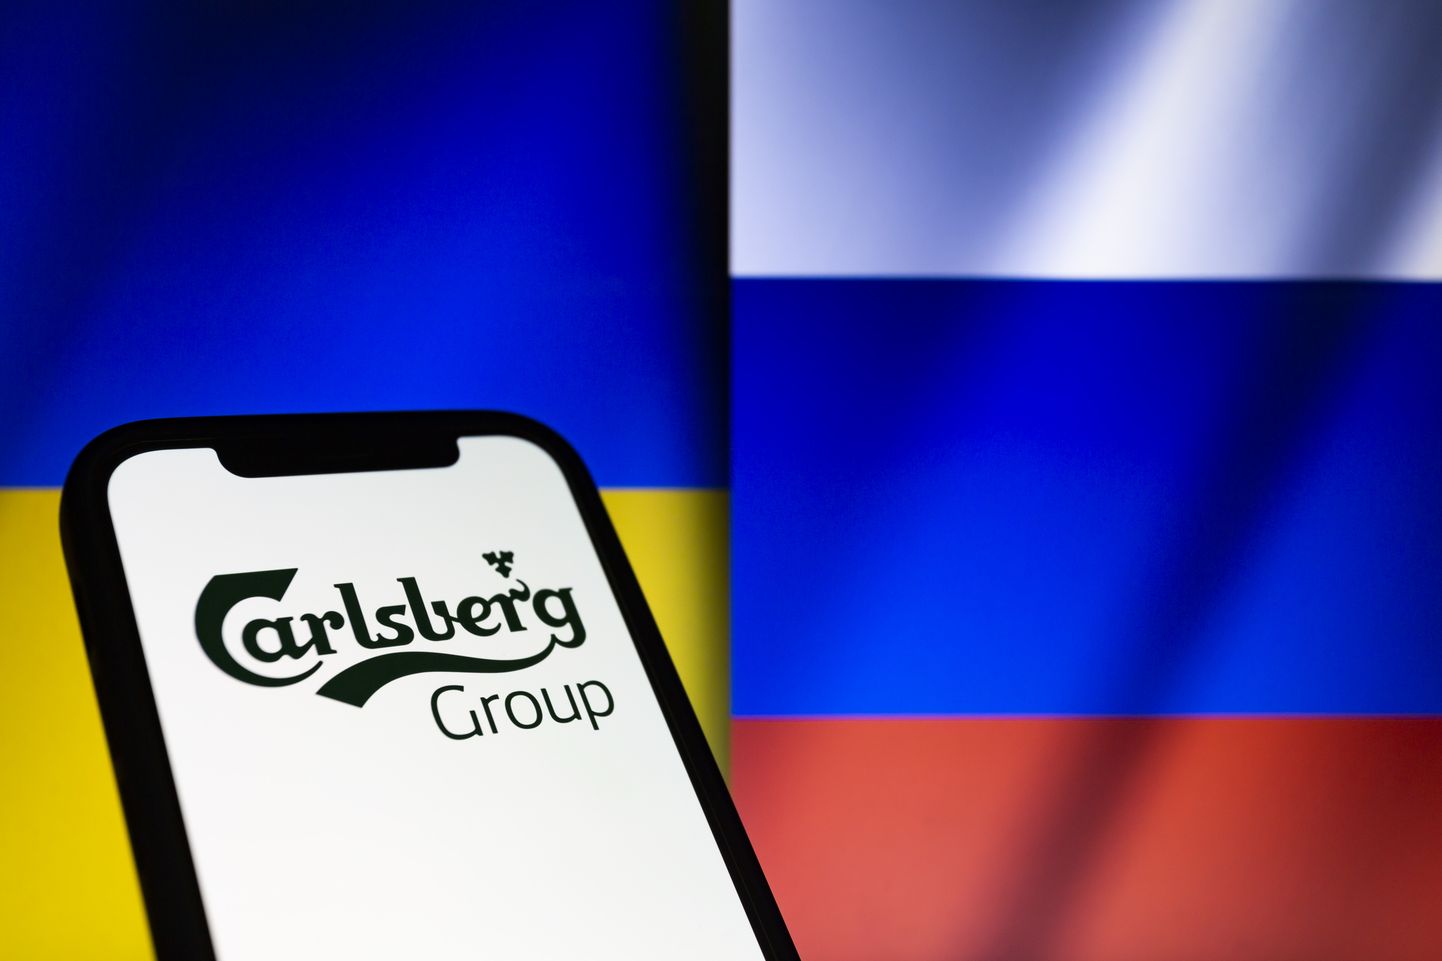 Carlsbergi grupi logo Vene ja Ukraina lipu taustal